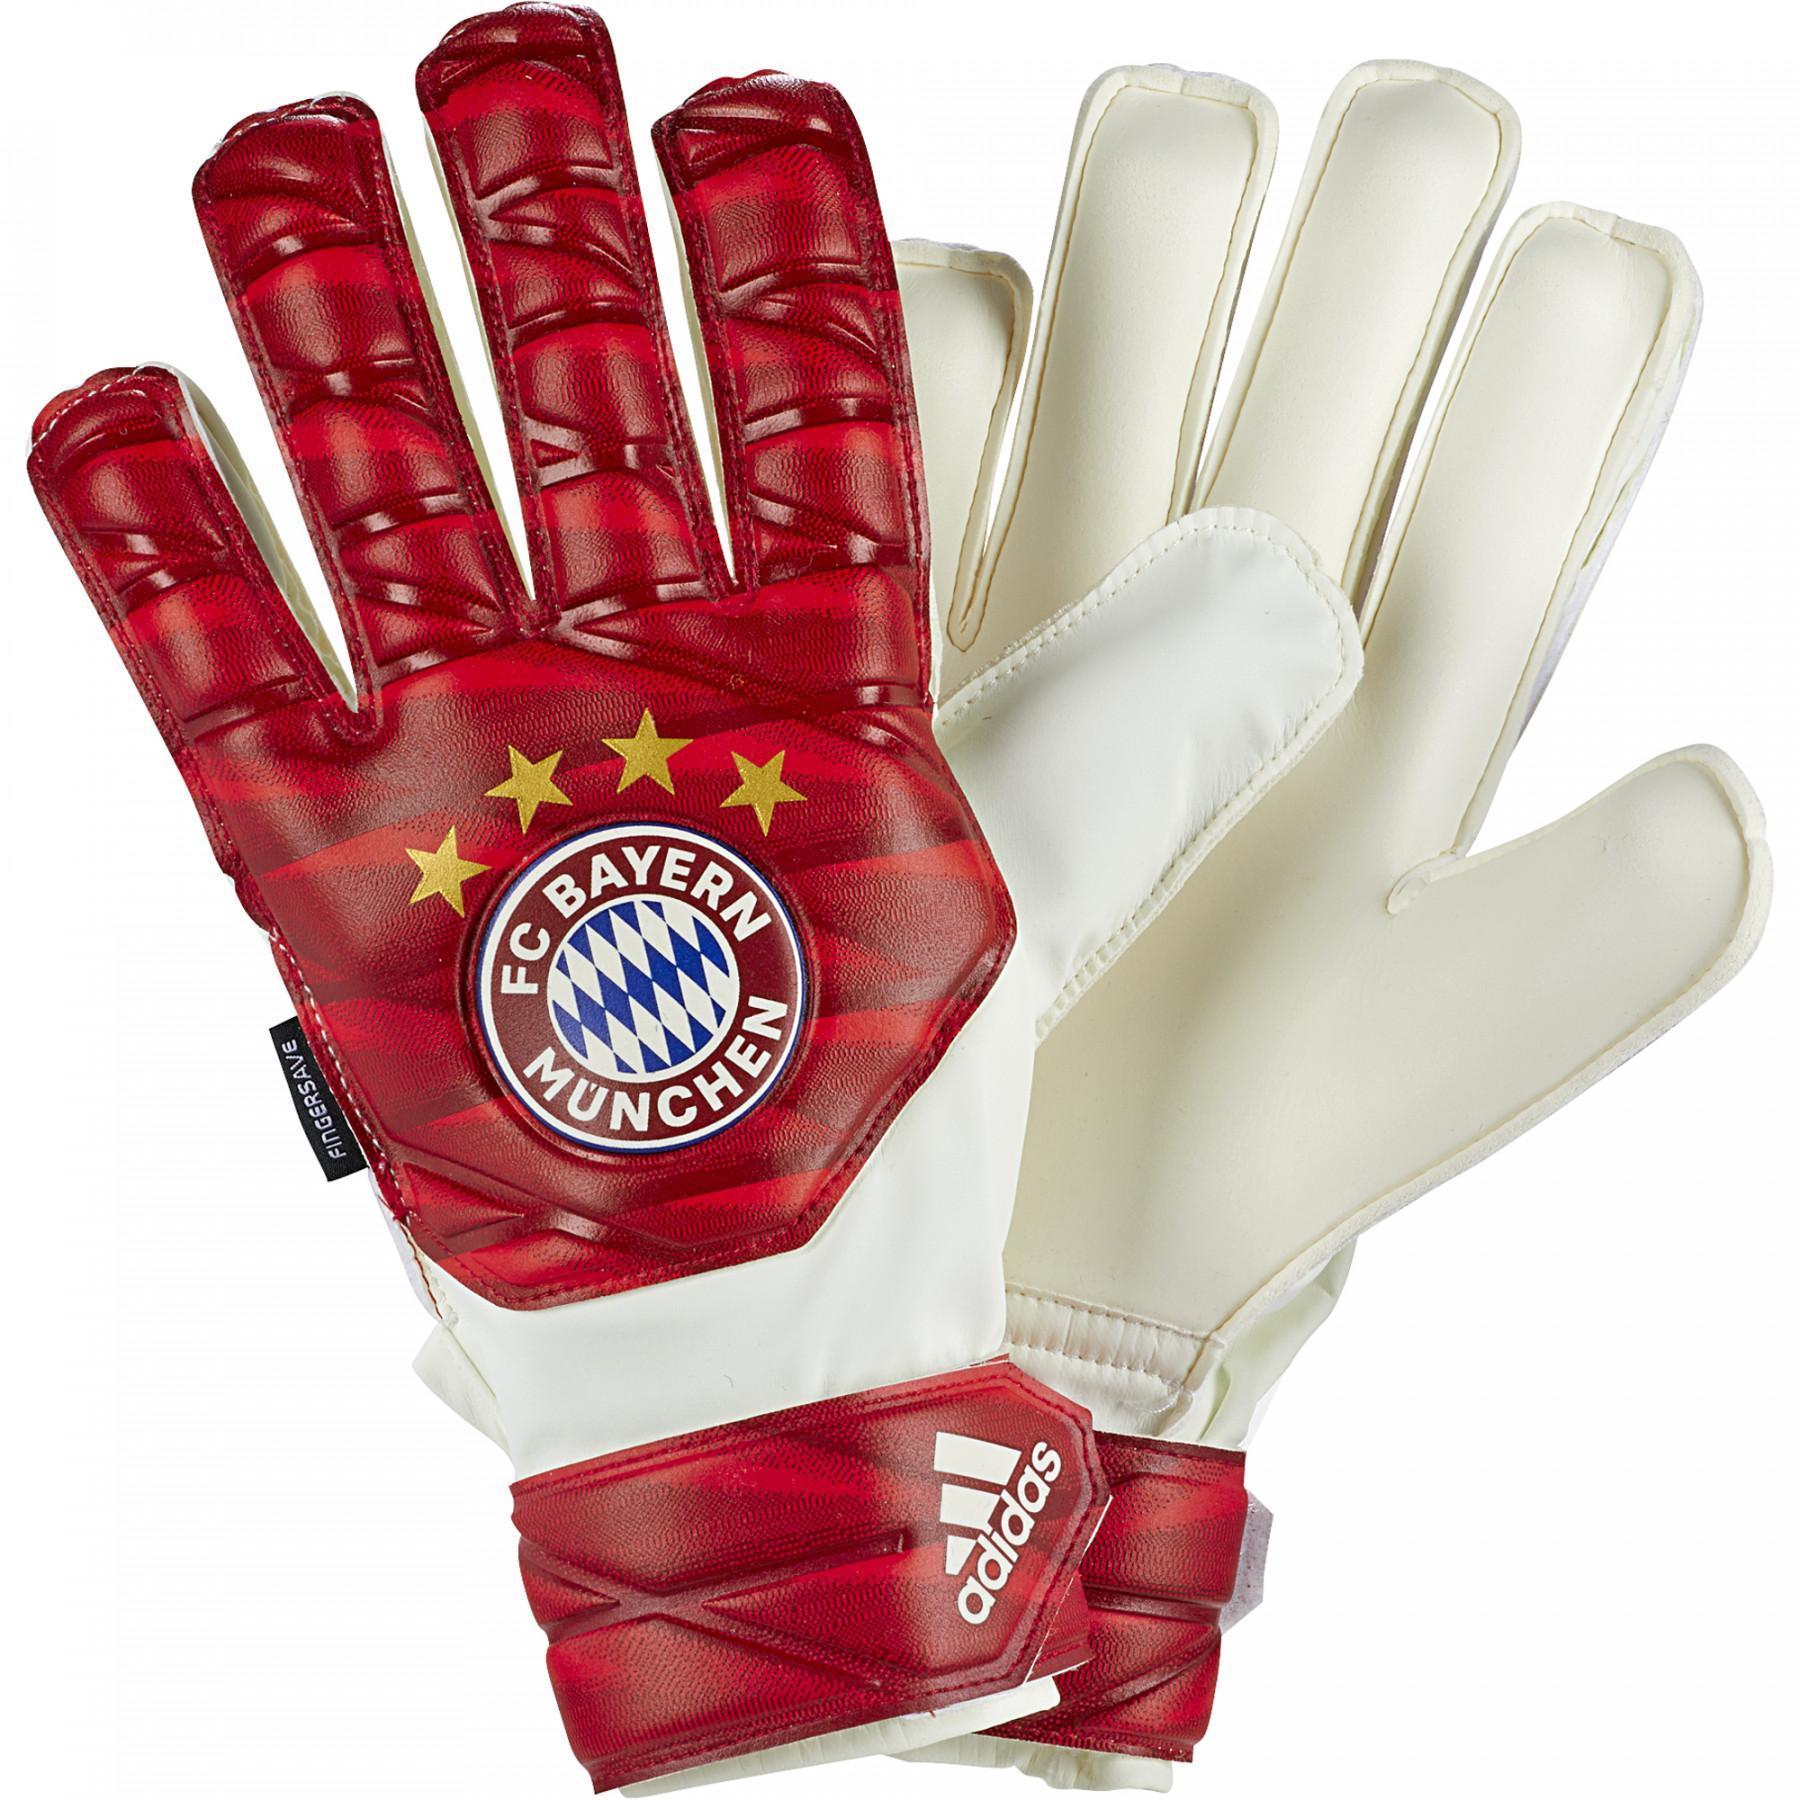 Kinder keepershandschoenen Bayern Munich